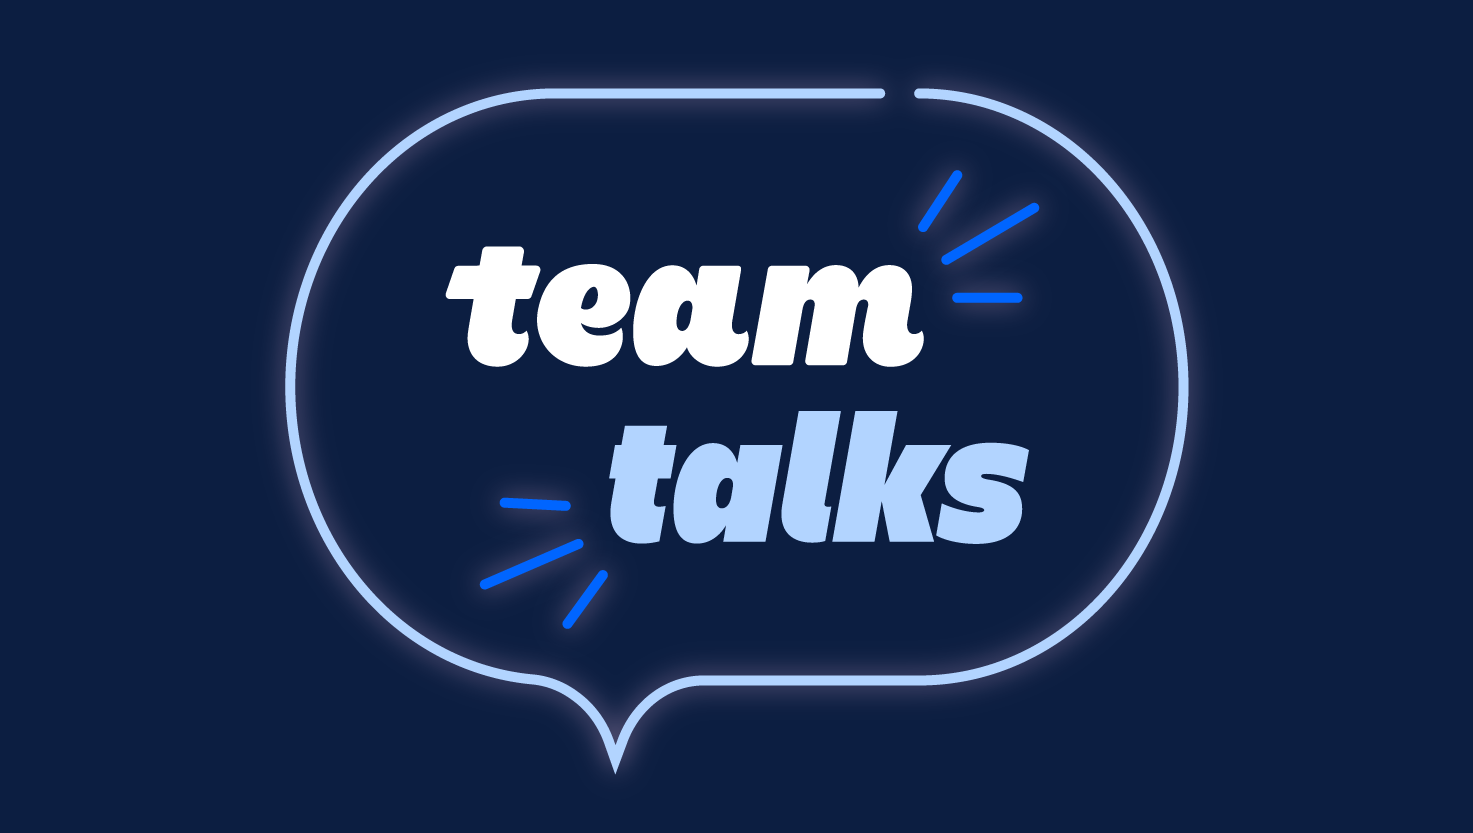 Team talks